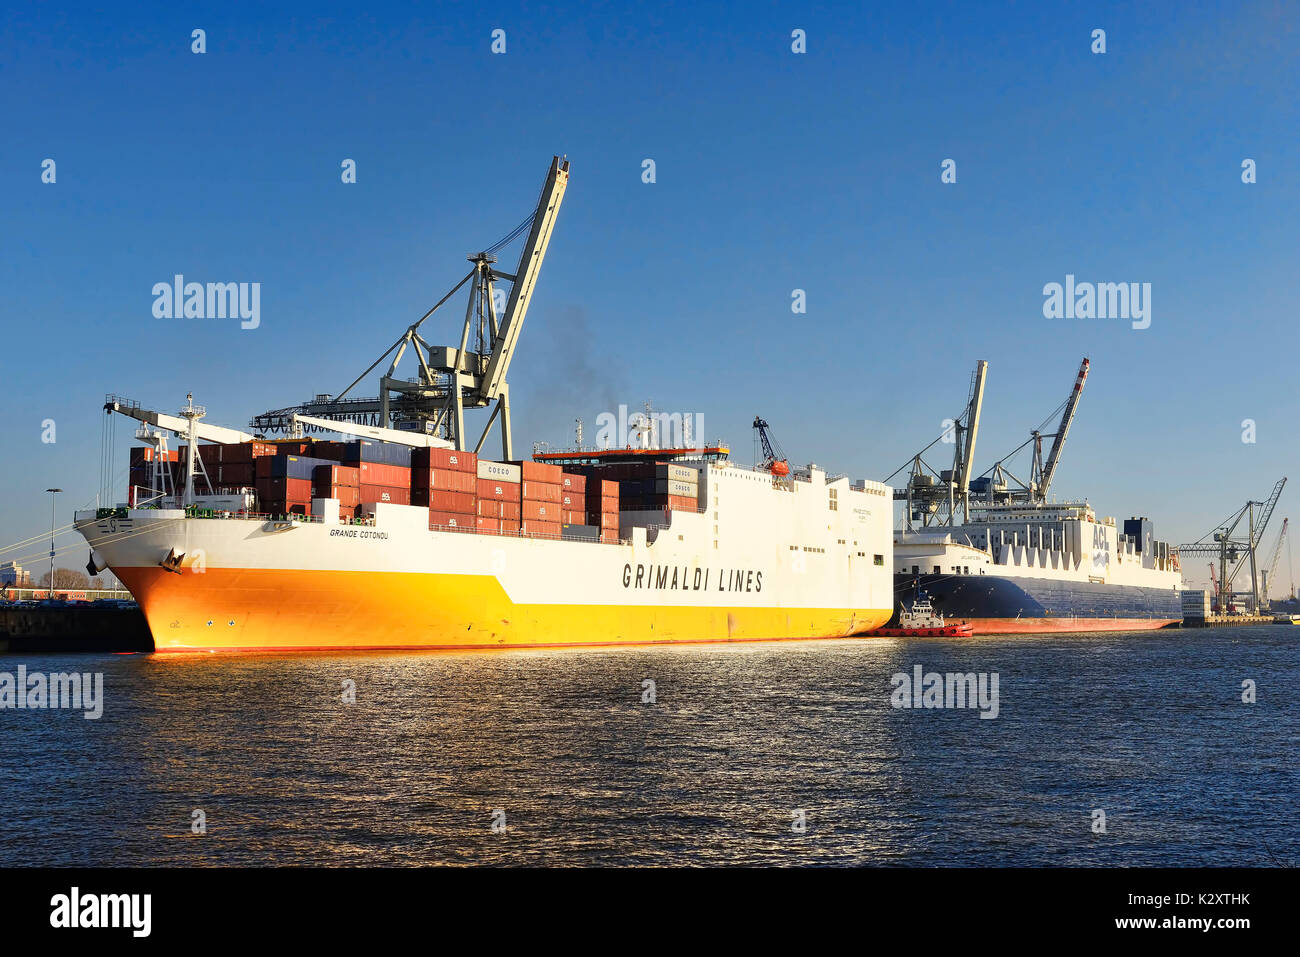 Nave container di grandee Cotonou in Hanse porto di Amburgo, Germania, Europa Containerschiff Grande Cotonou Hansahafen im von Hamburg, Deutschland Foto Stock